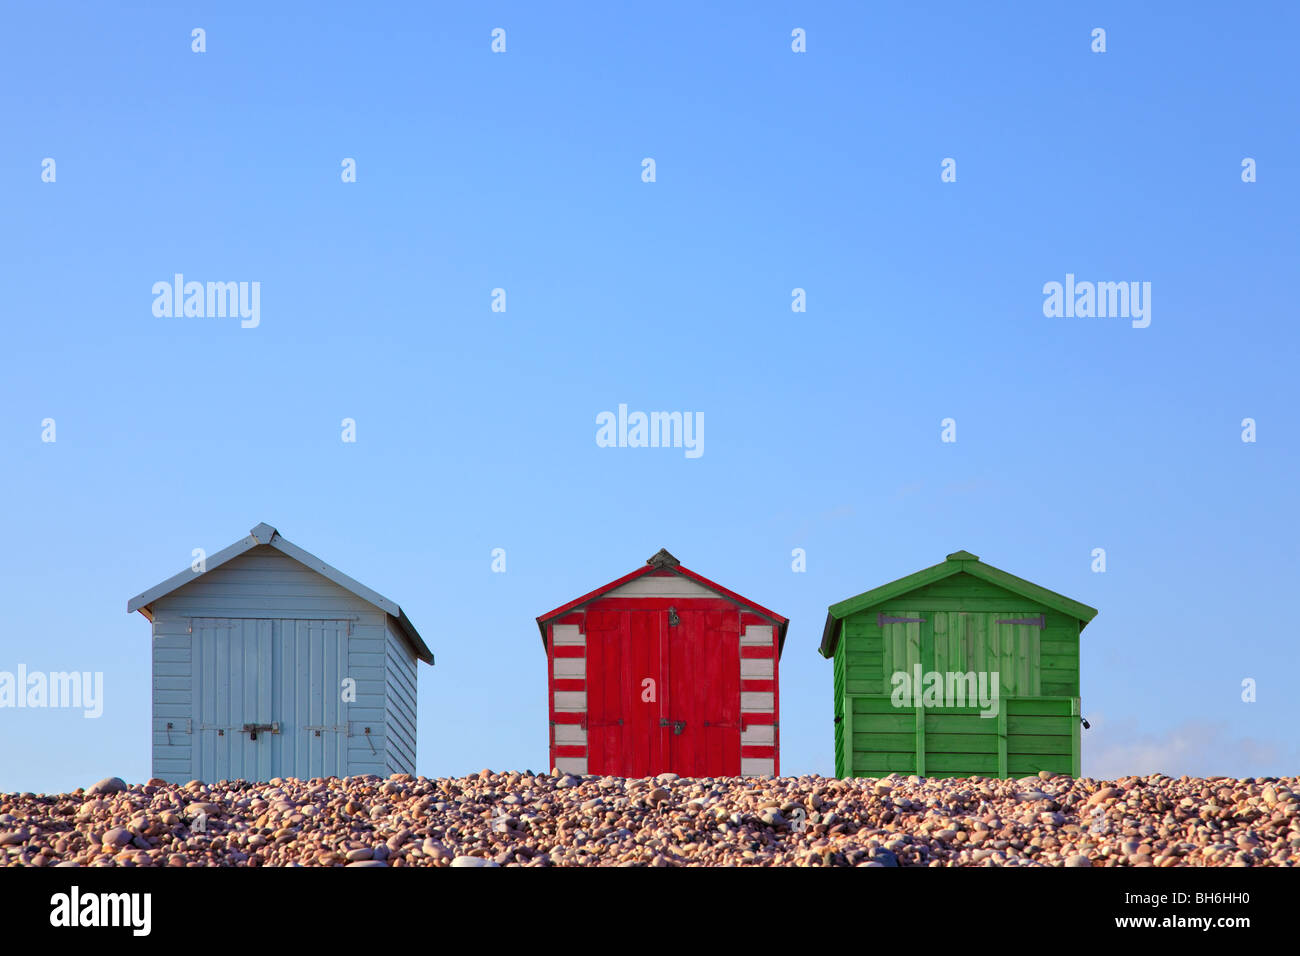 Drei bunte Strandhütten gegen ein strahlend blauer Himmel, gerahmt um textfreiraum im oberen Teil des Bildes zu ermöglichen. Stockfoto